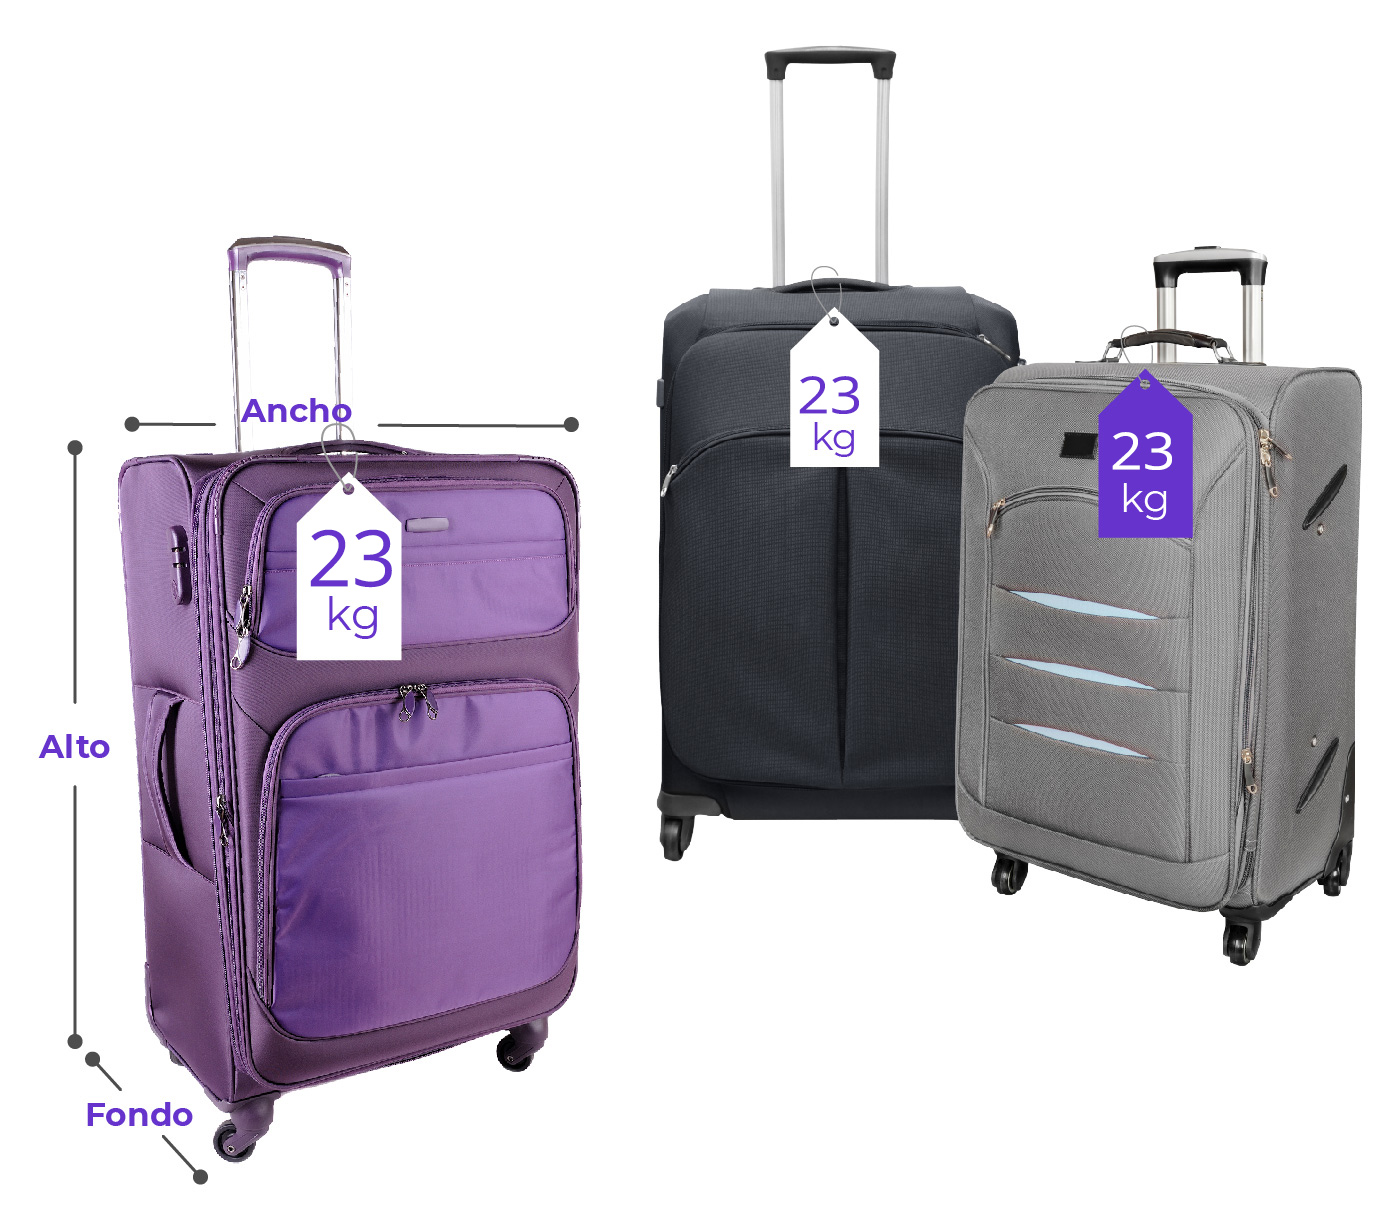 Componer muerte Oclusión Medidas de maletas permitidas para viajar en avión | Wingo